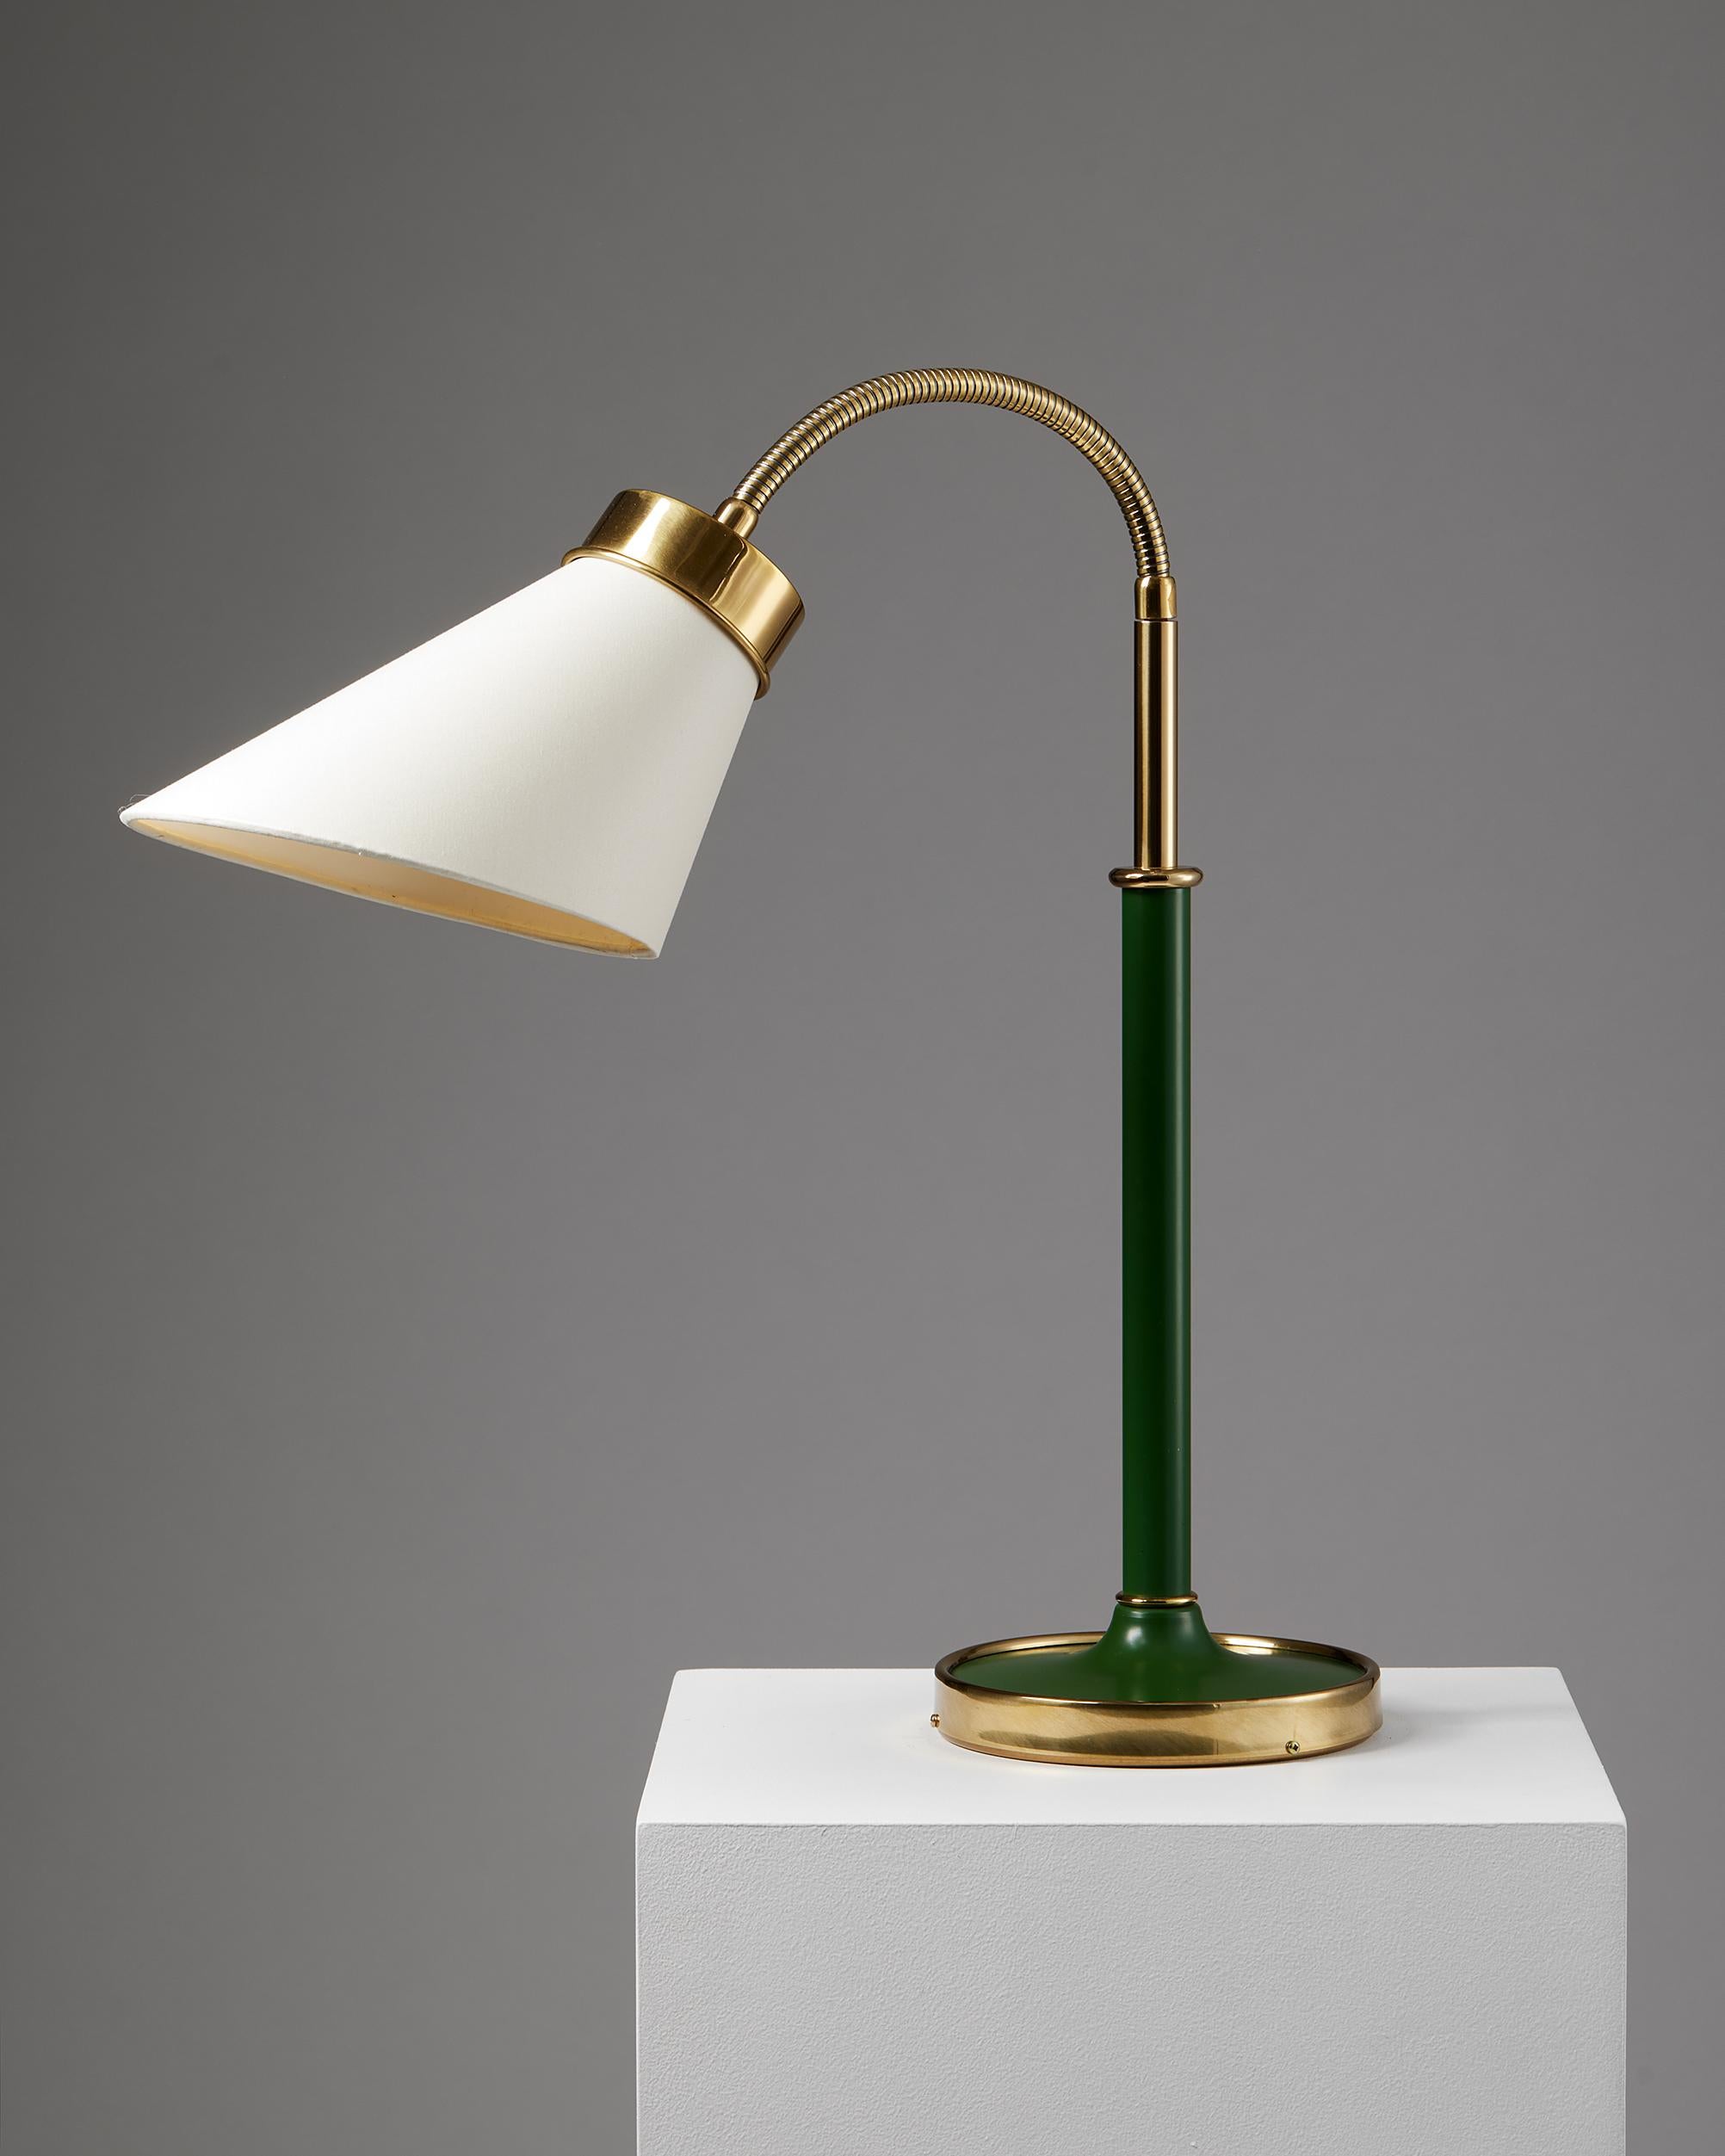 Mid-Century Modern Table Lamp Model 2434 Designed by Josef Frank for Svenskt Tenn, Sweden, 1939